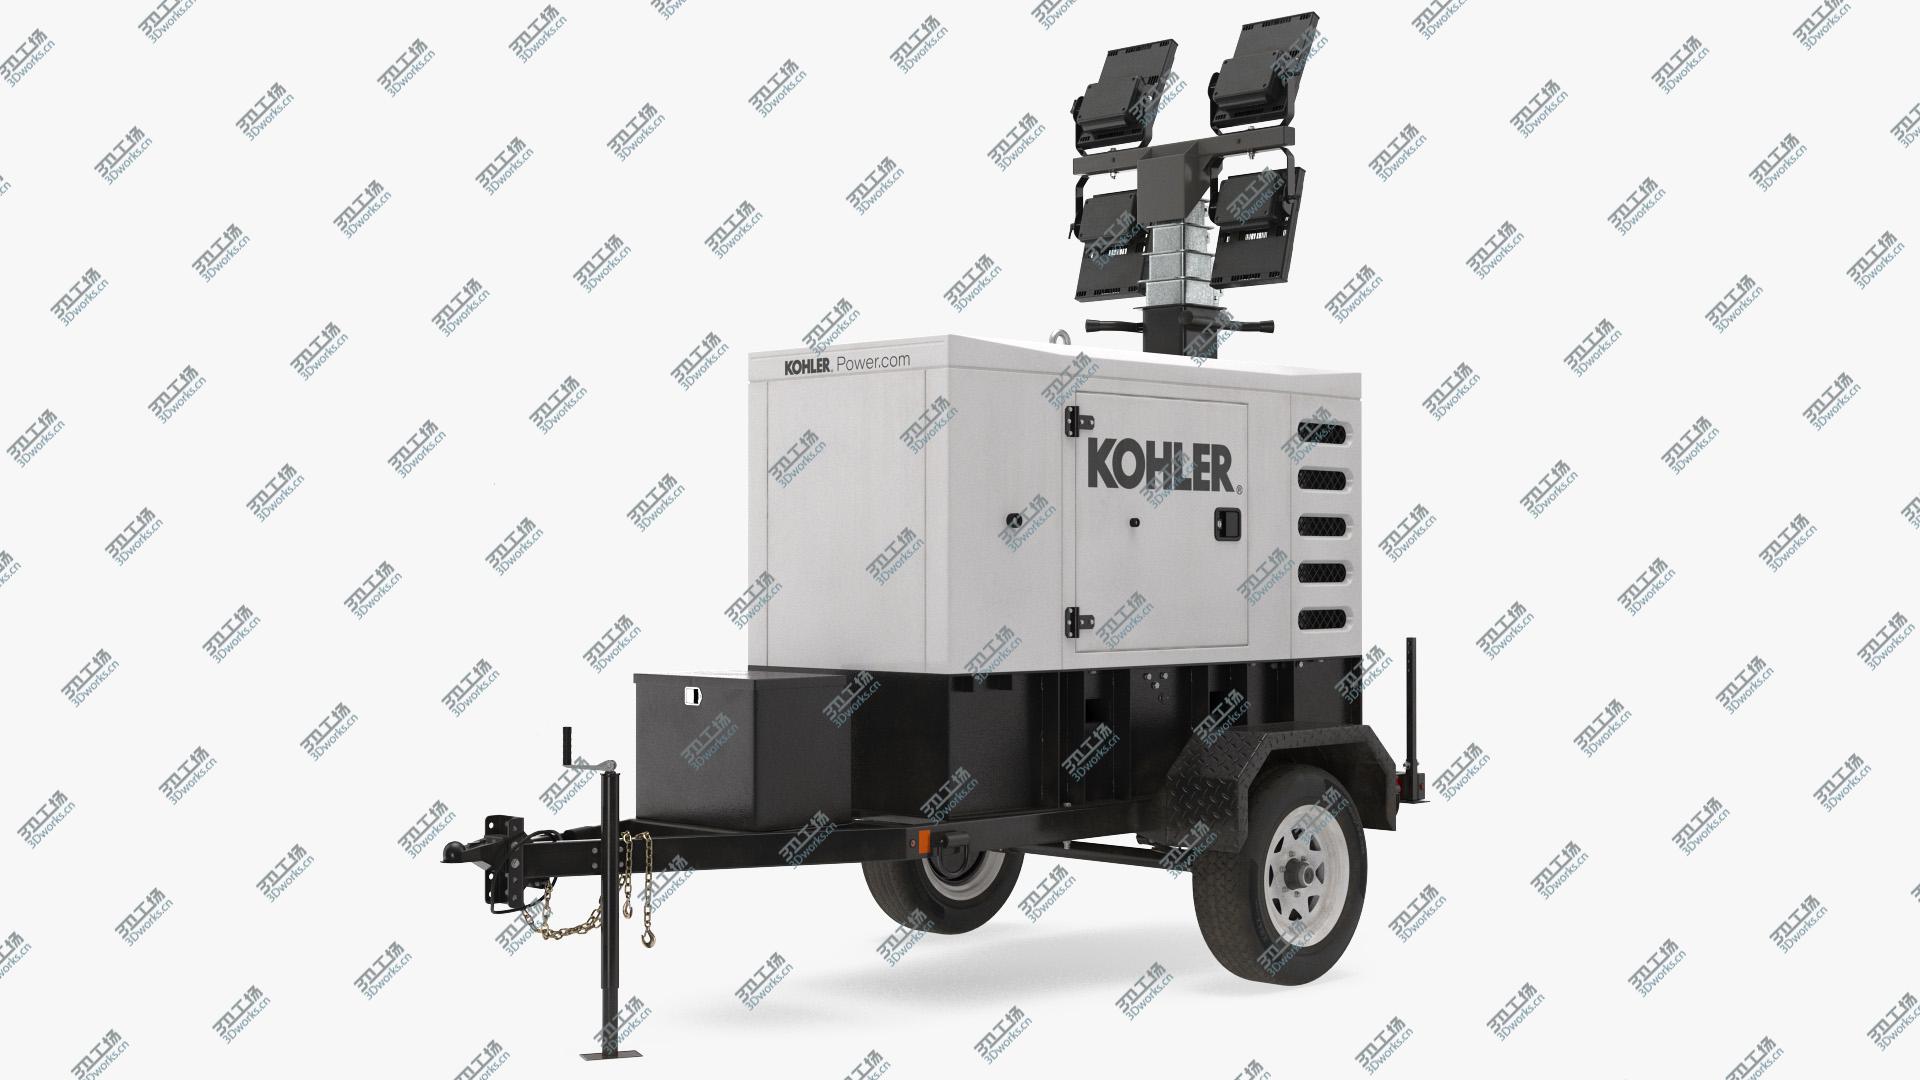 images/goods_img/2021040164/Kohler Mobile Generator 3D model/1.jpg